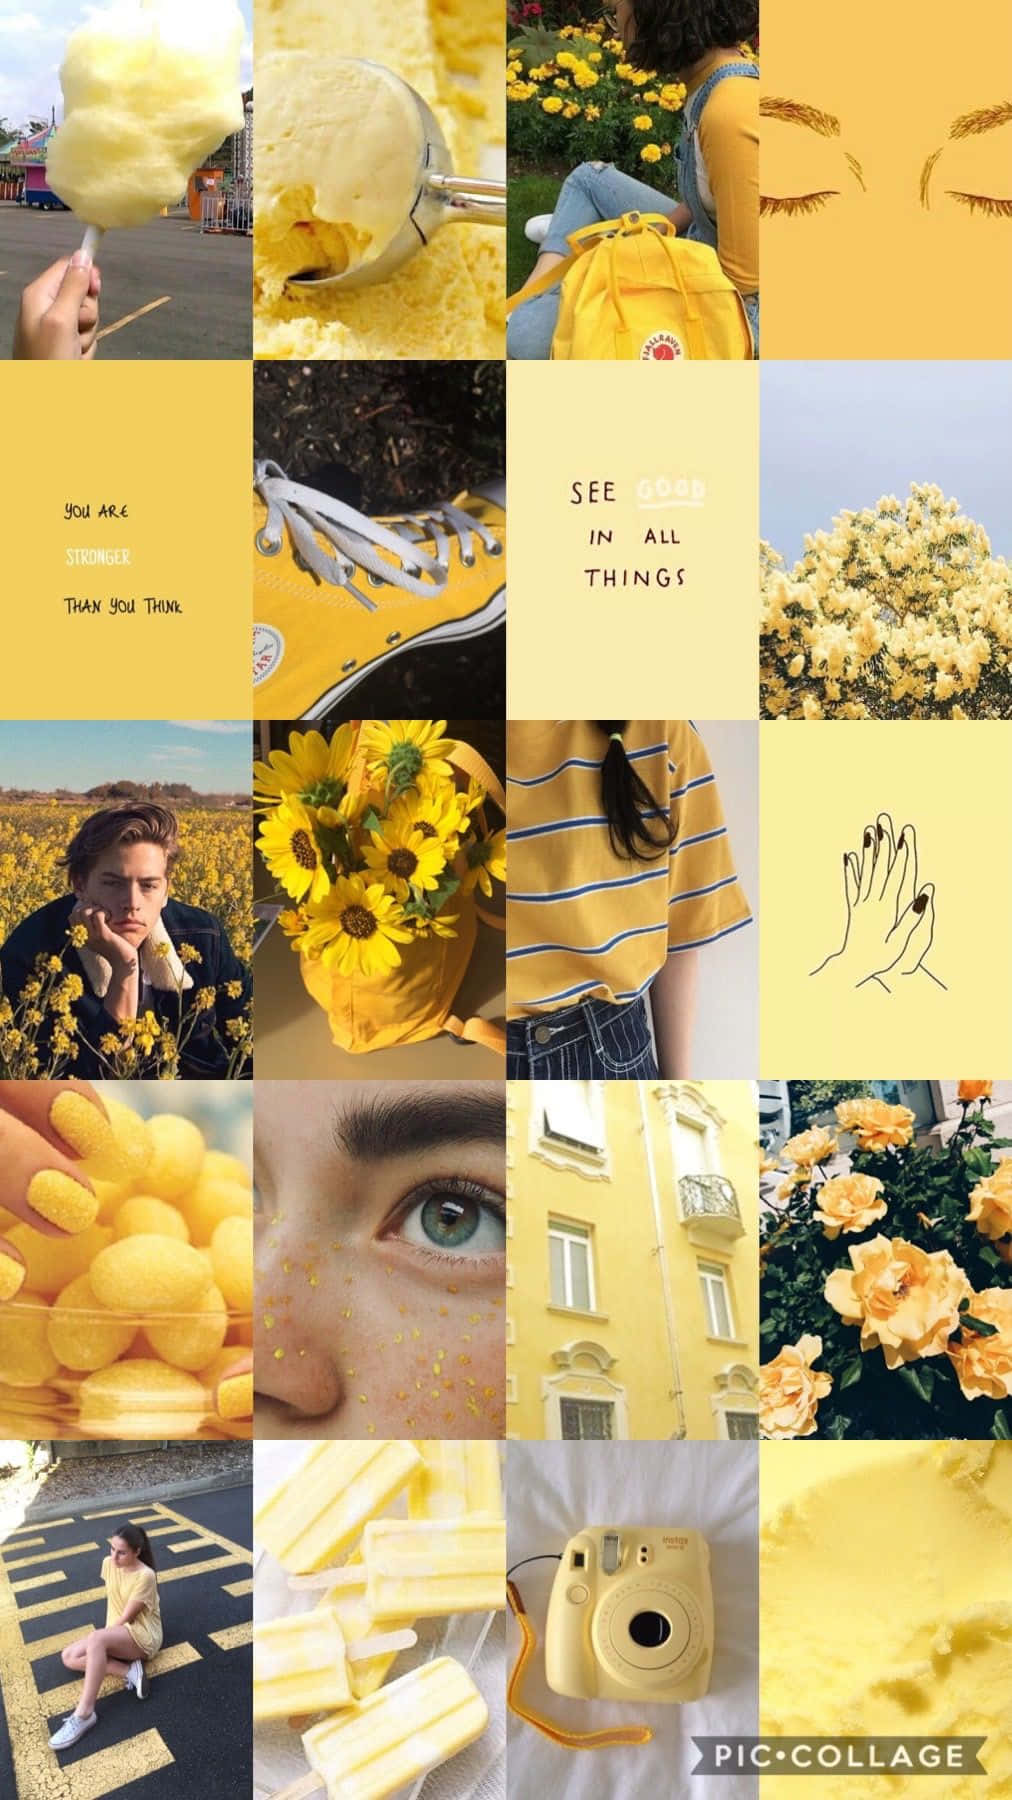 yellow things tumblr